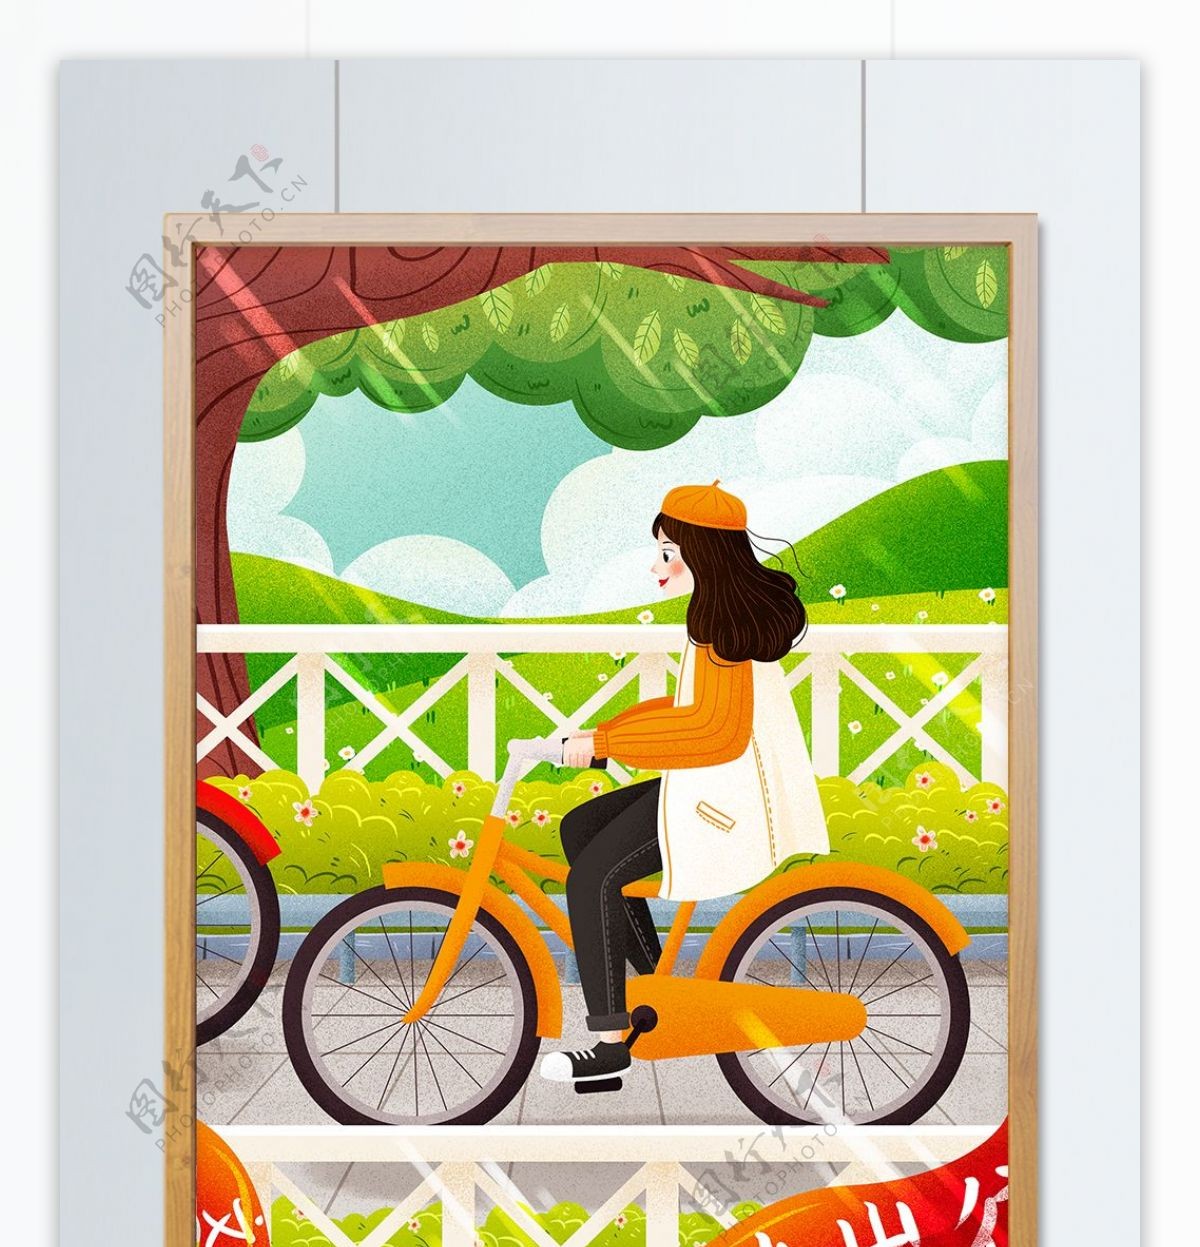 文明绿色低碳出行骑自行车女孩插画